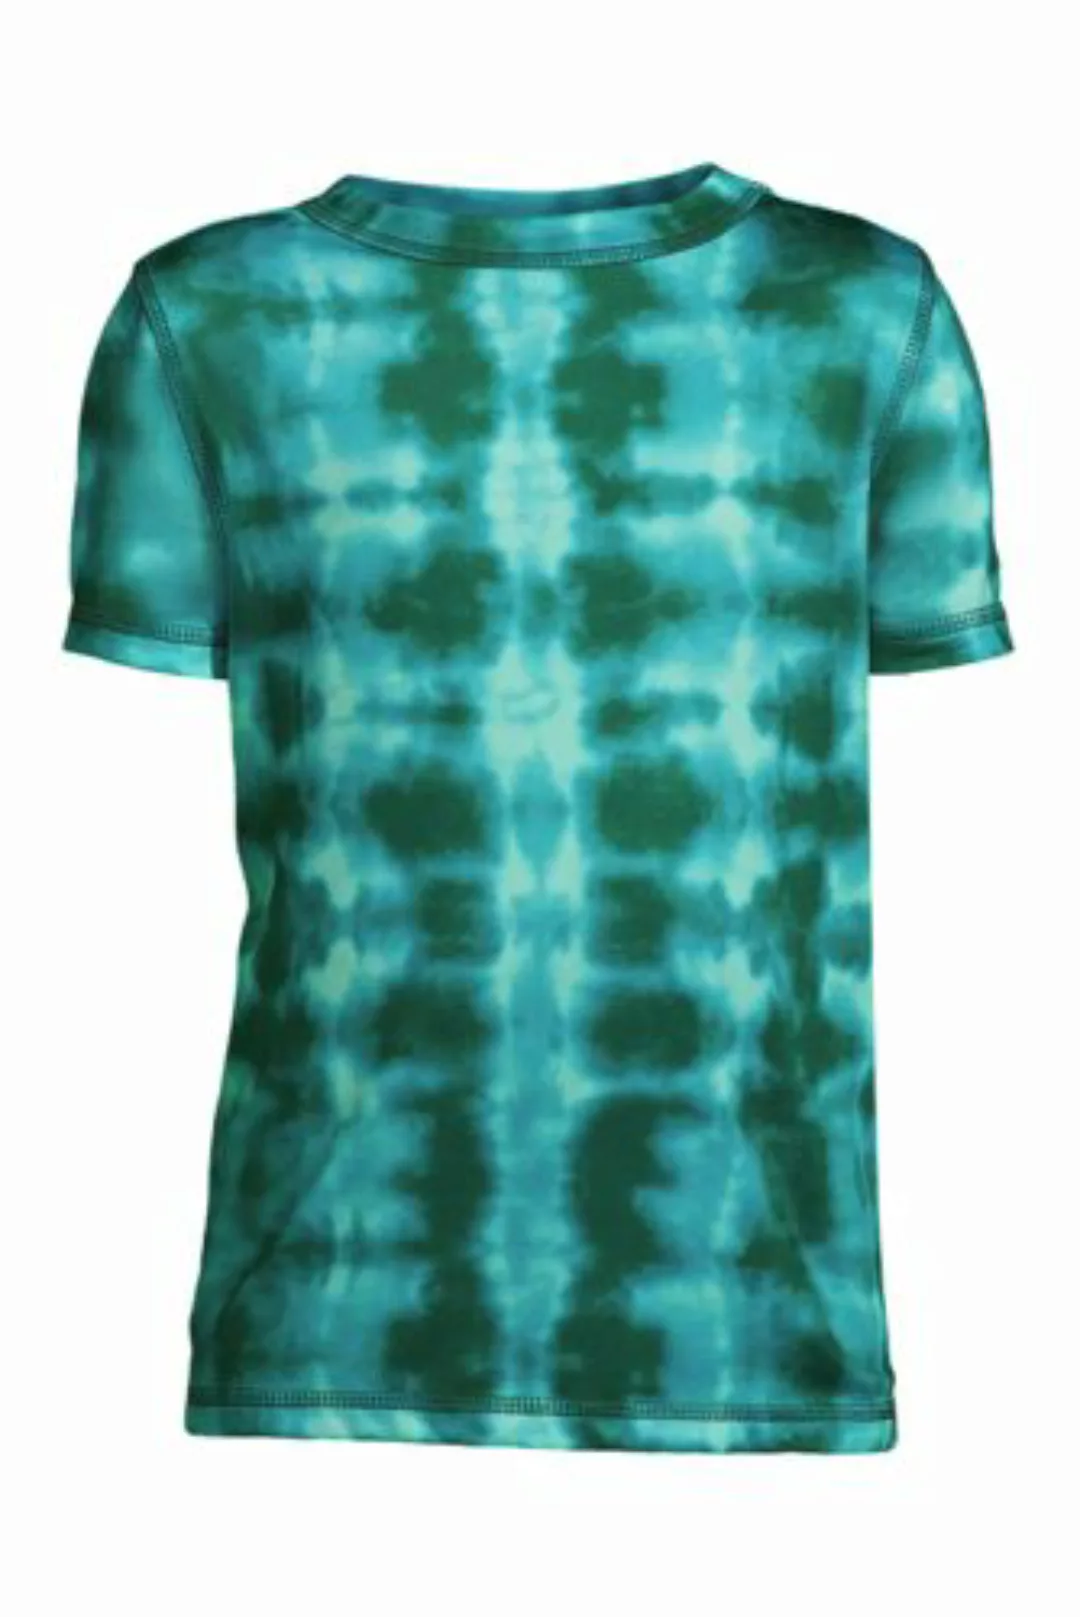 Gemustertes Performance T-Shirt, Größe: 122/128, Grün, Polyester-Mischung, günstig online kaufen